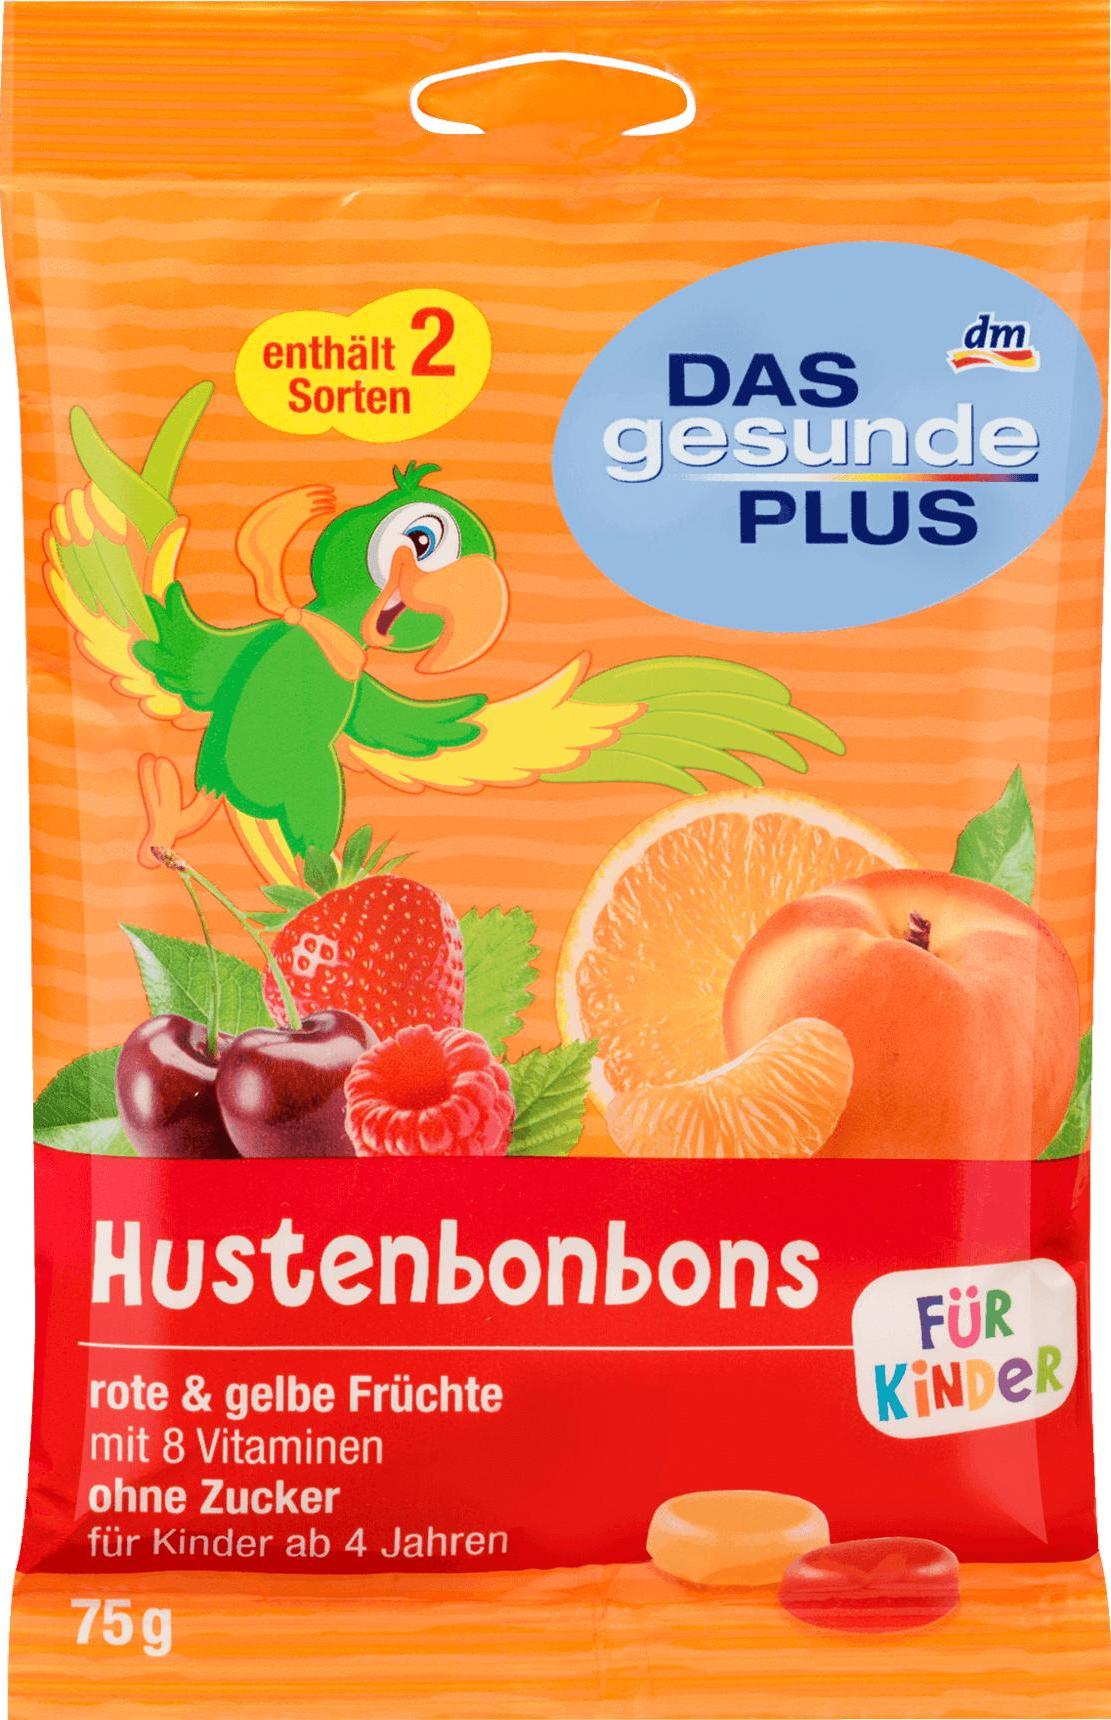 Отзыв на Husten-Bonbons, rote & gelbe Früchte, für Kinder, zuckerfrei, 75 g из Интернет-Магазина DM